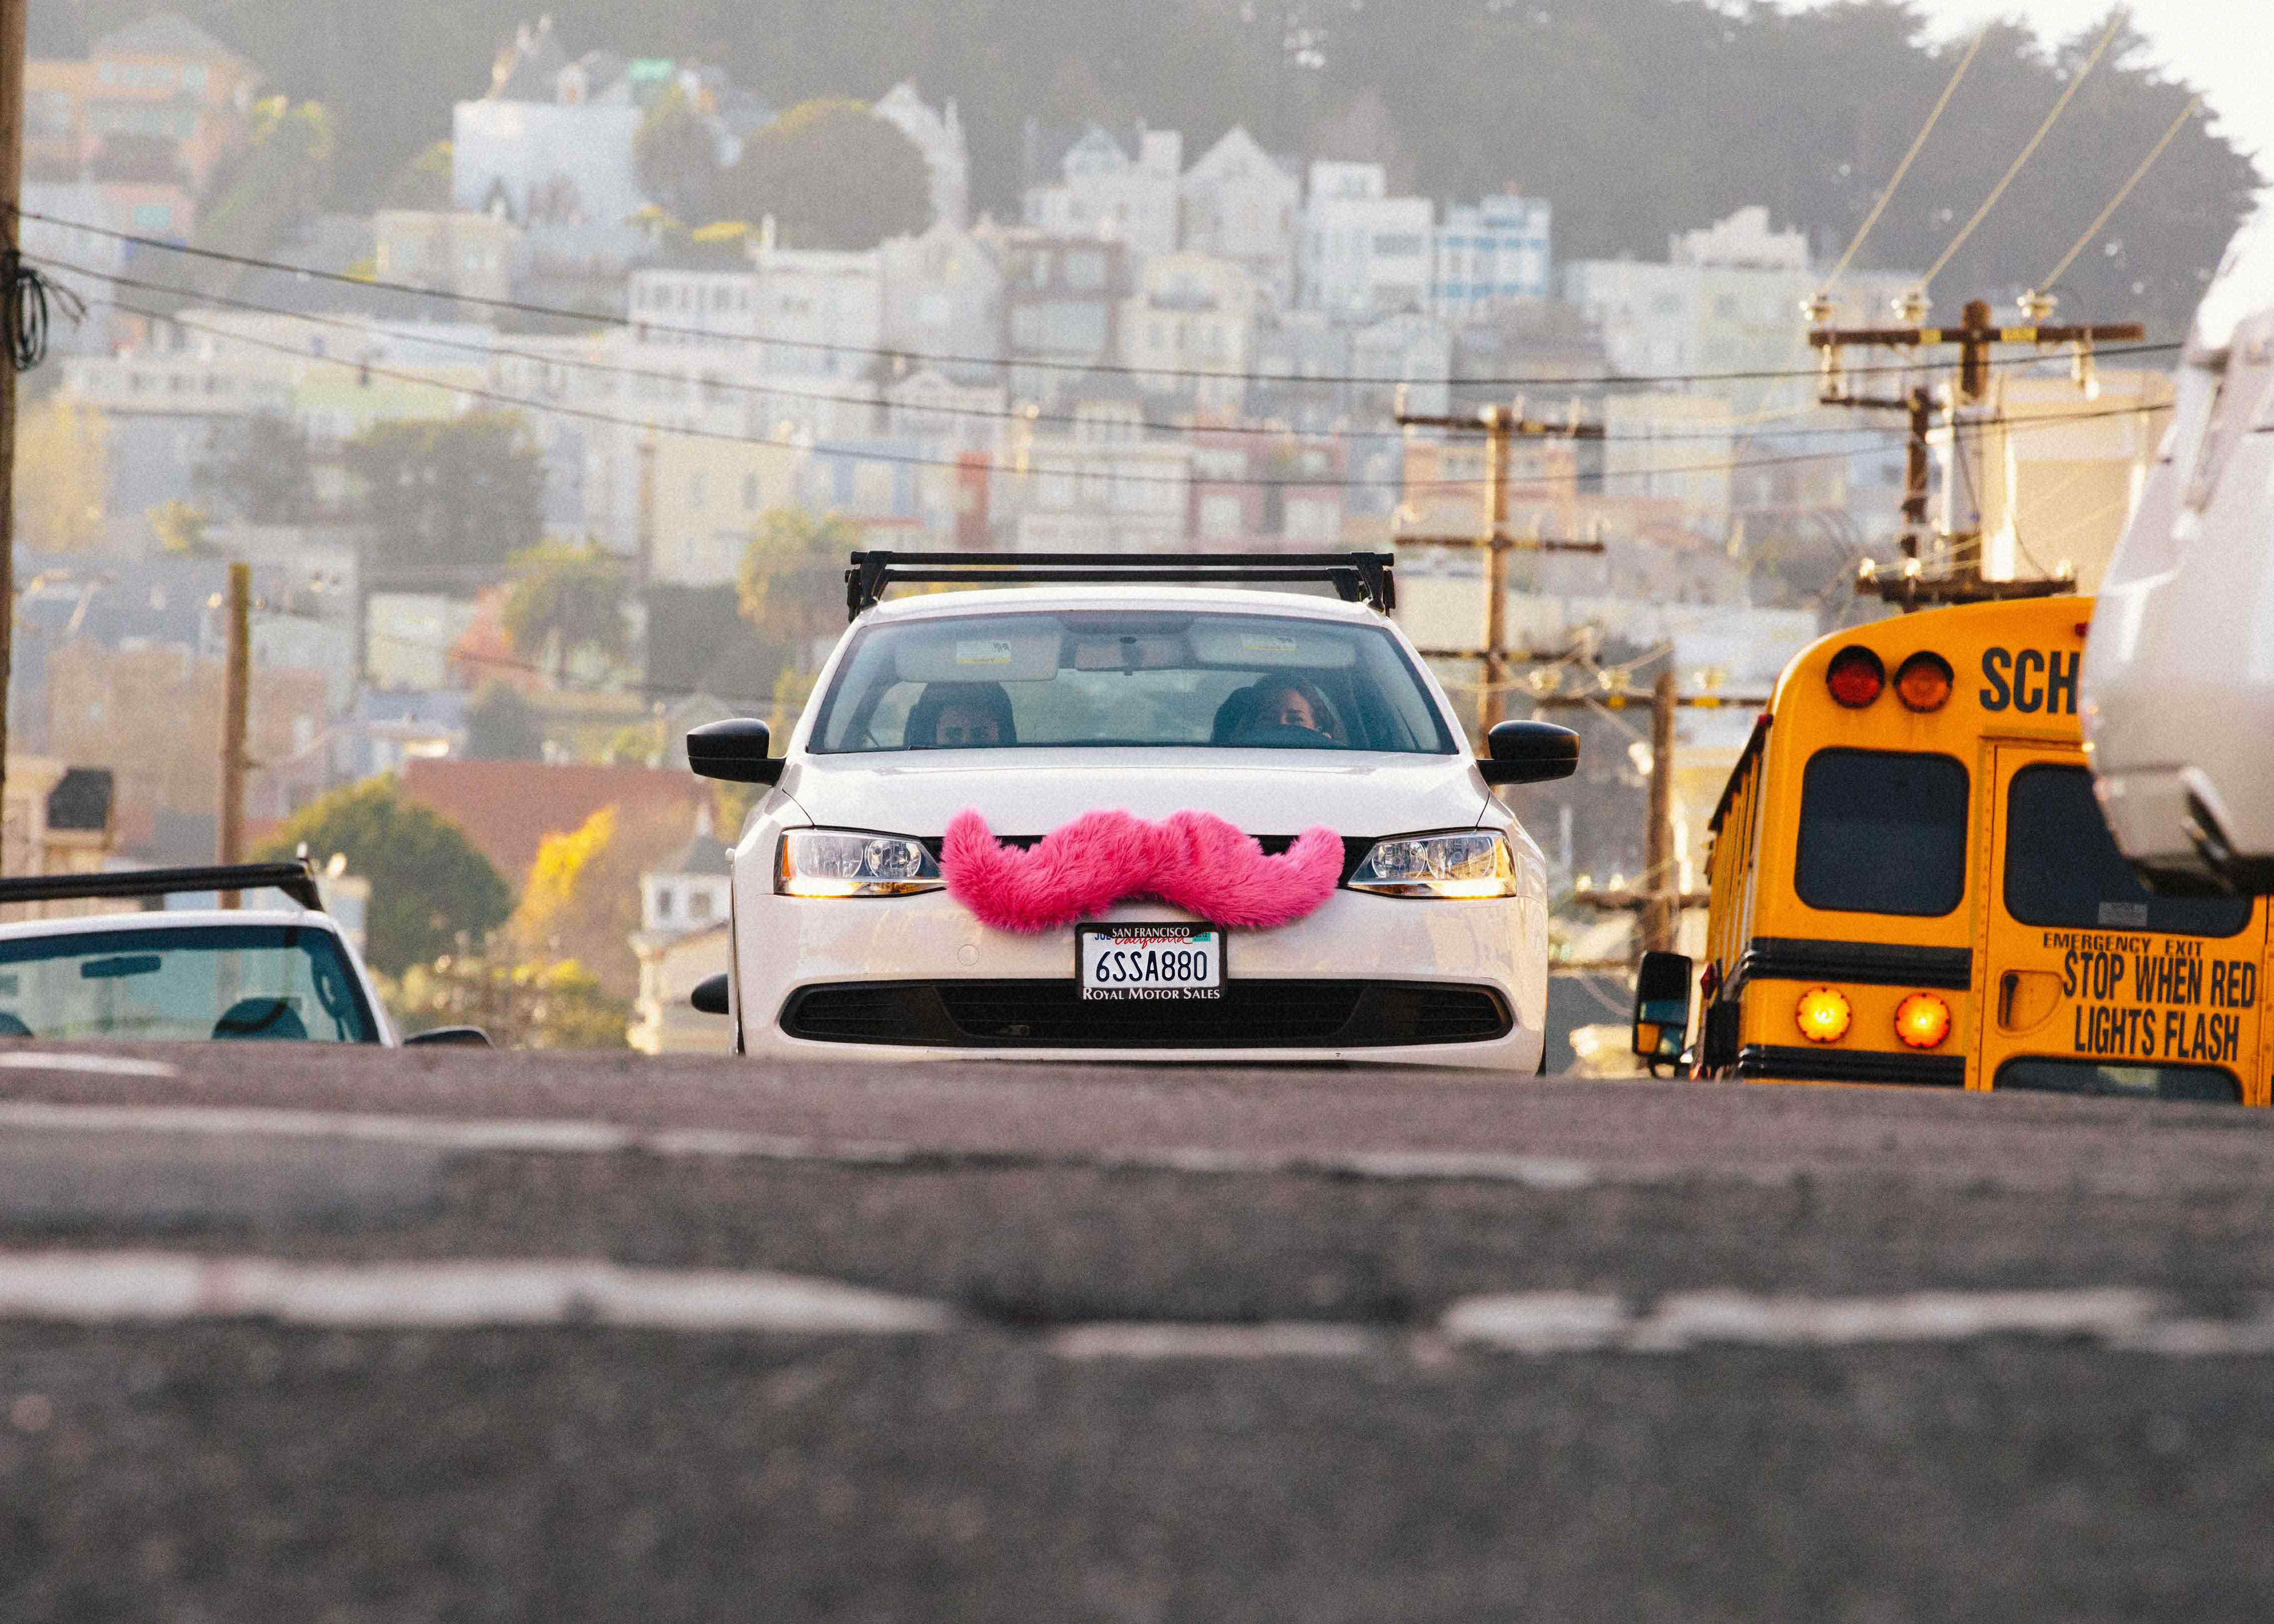 A Lyft car operates in San Francisco. (courtesy of Lyft)